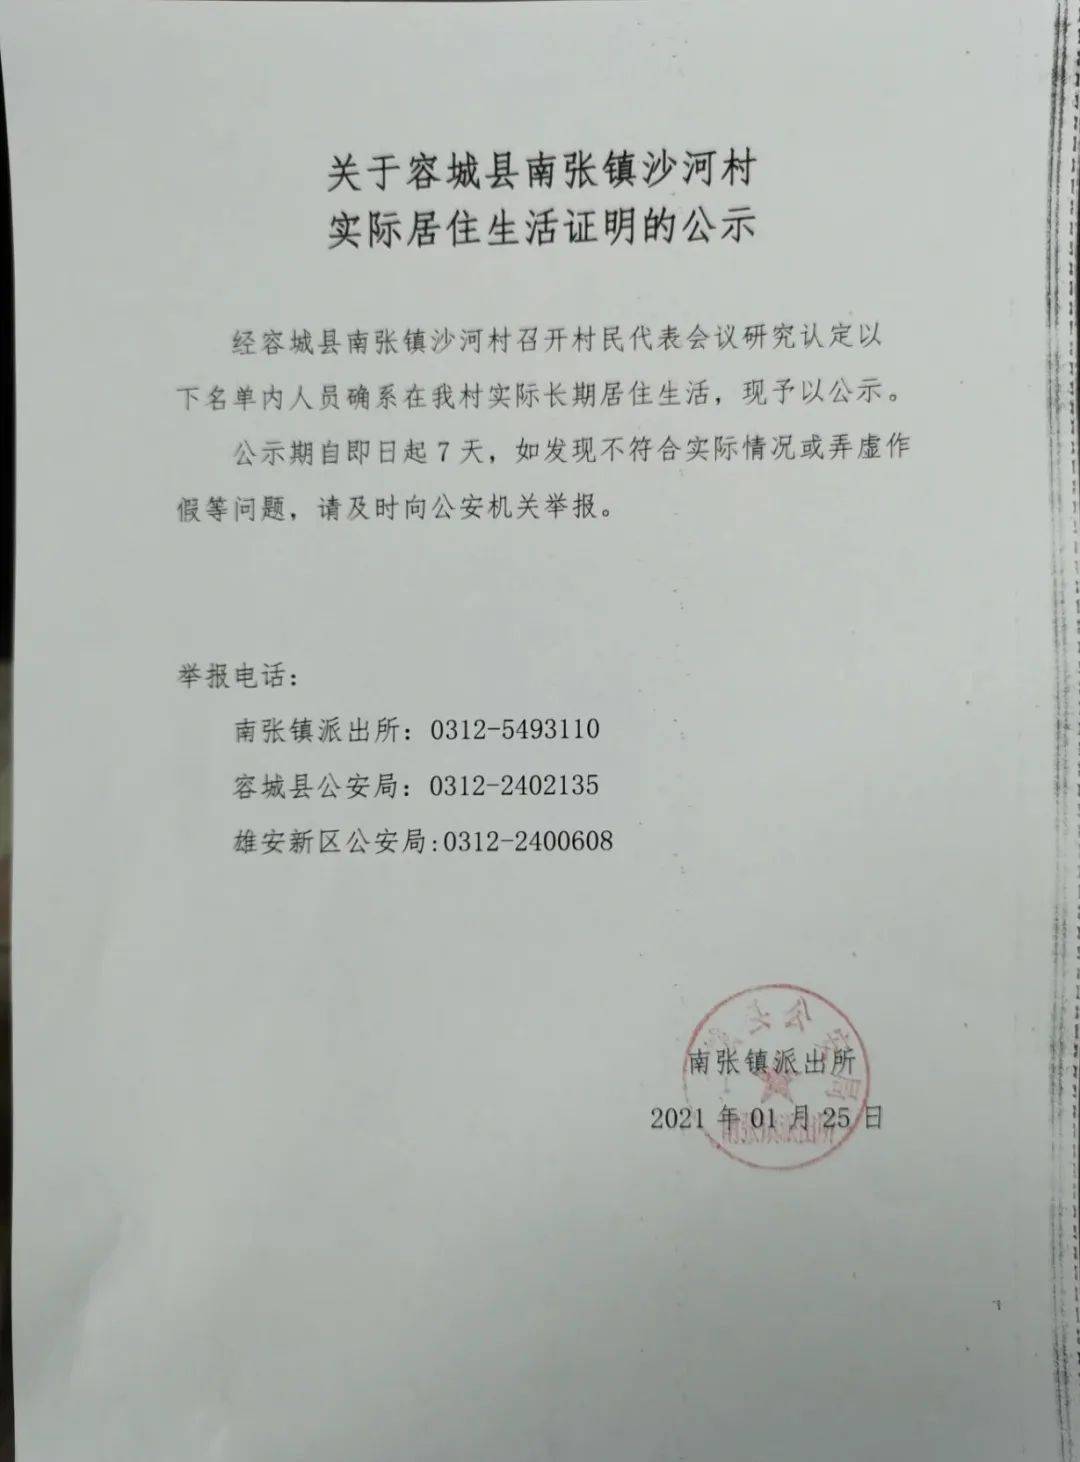 关于在容城县南张镇沙河村,北张村实际居住生活证明的公示